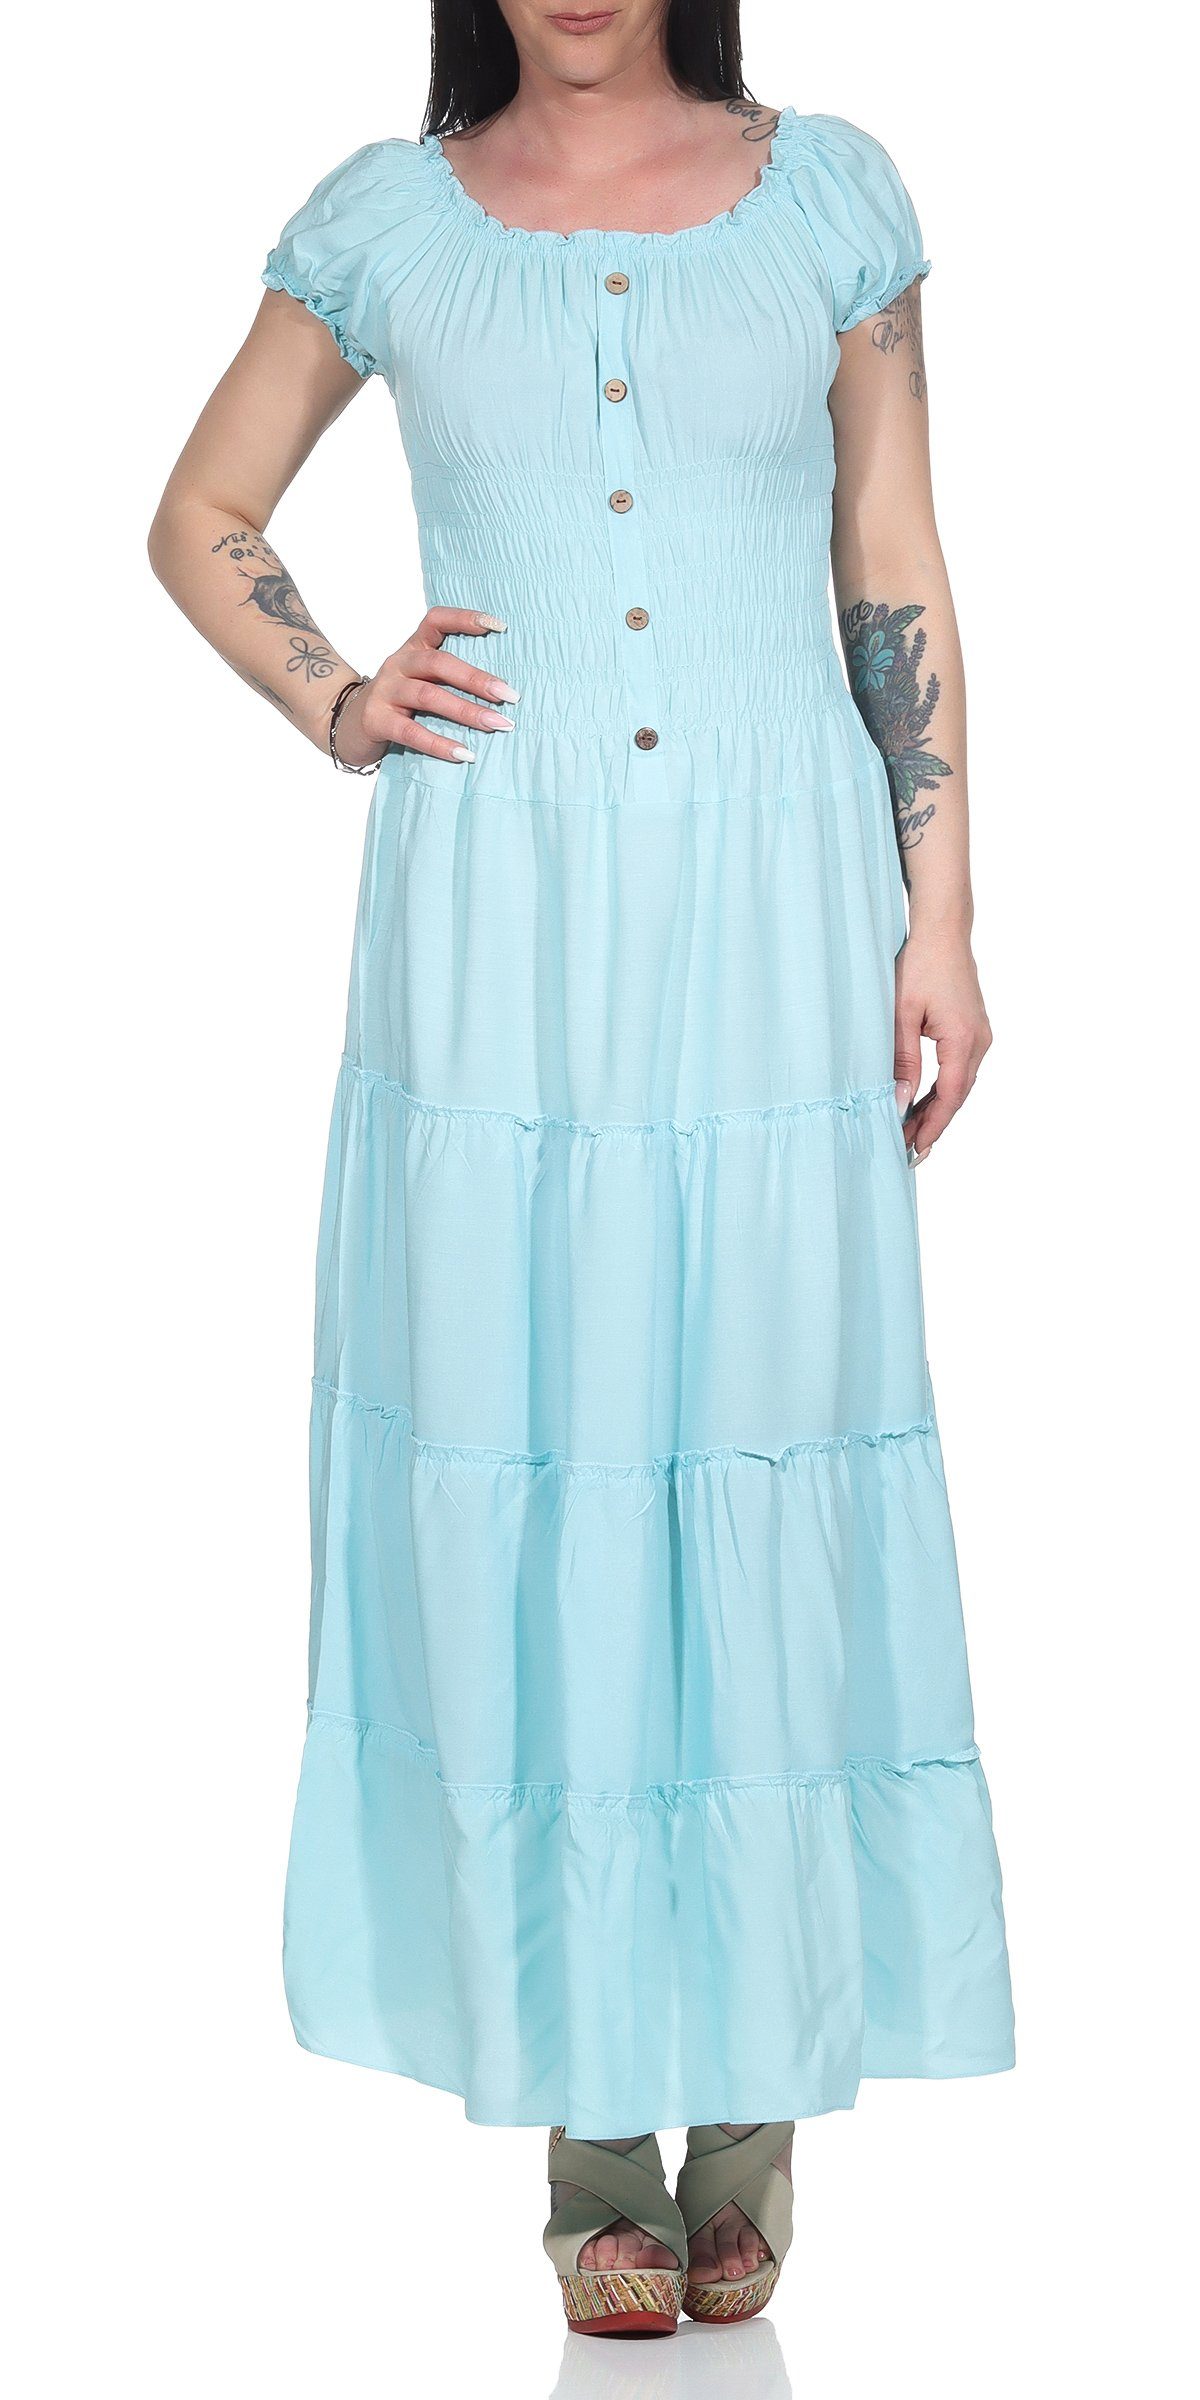 Carmen- Damen Damenmode möglich Kleider - Ausschnitt 132 Sommer Kleider einfarbig Aurela Gesamtlänge: Strandkleid 135cm, elegant lang Rundhals Türkis oder